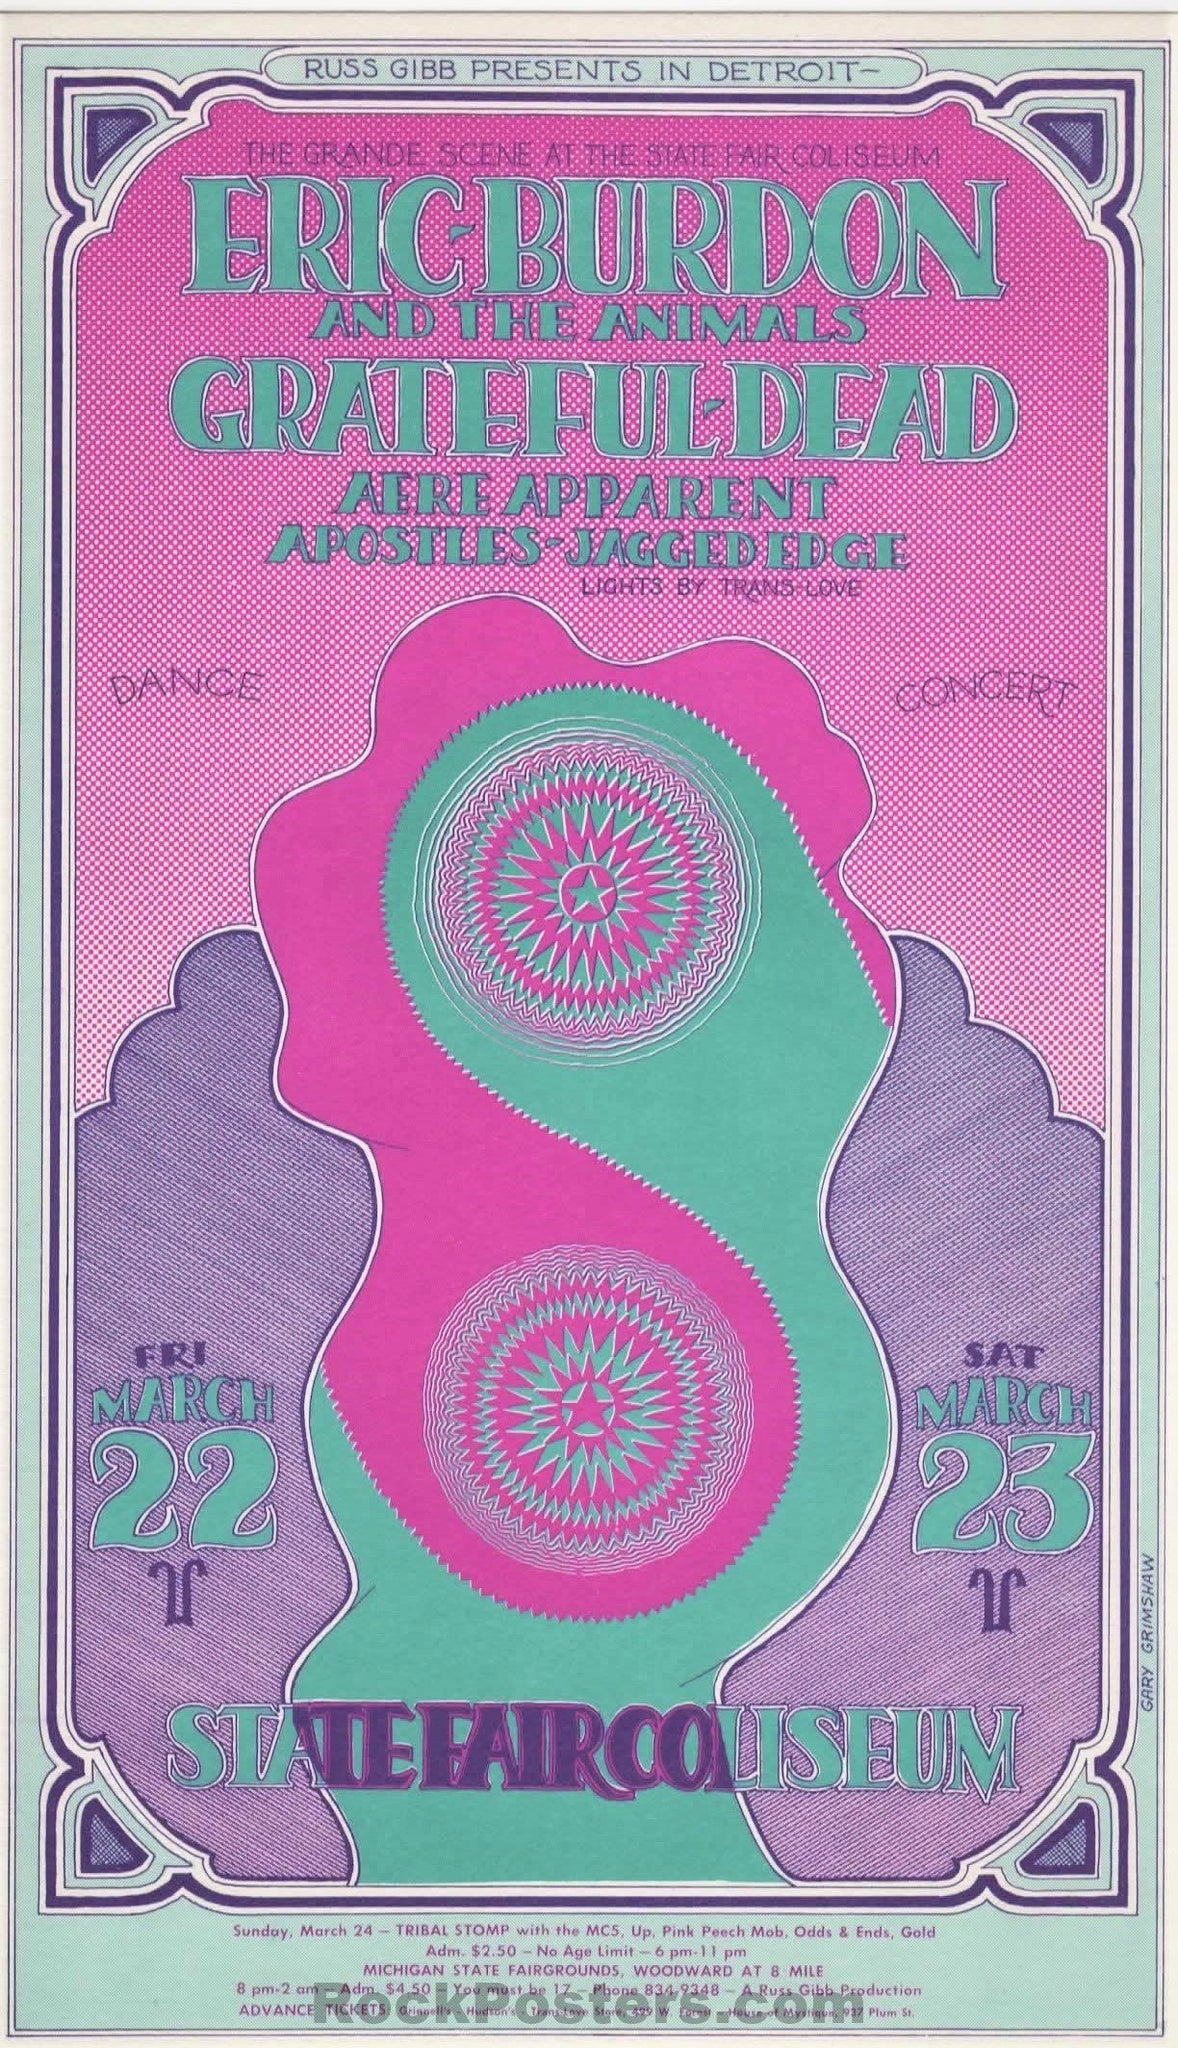 AUCTION -  GB-75 - Grateful Dead - 1968 Postcard - State Fair Coliseum - Near Mint